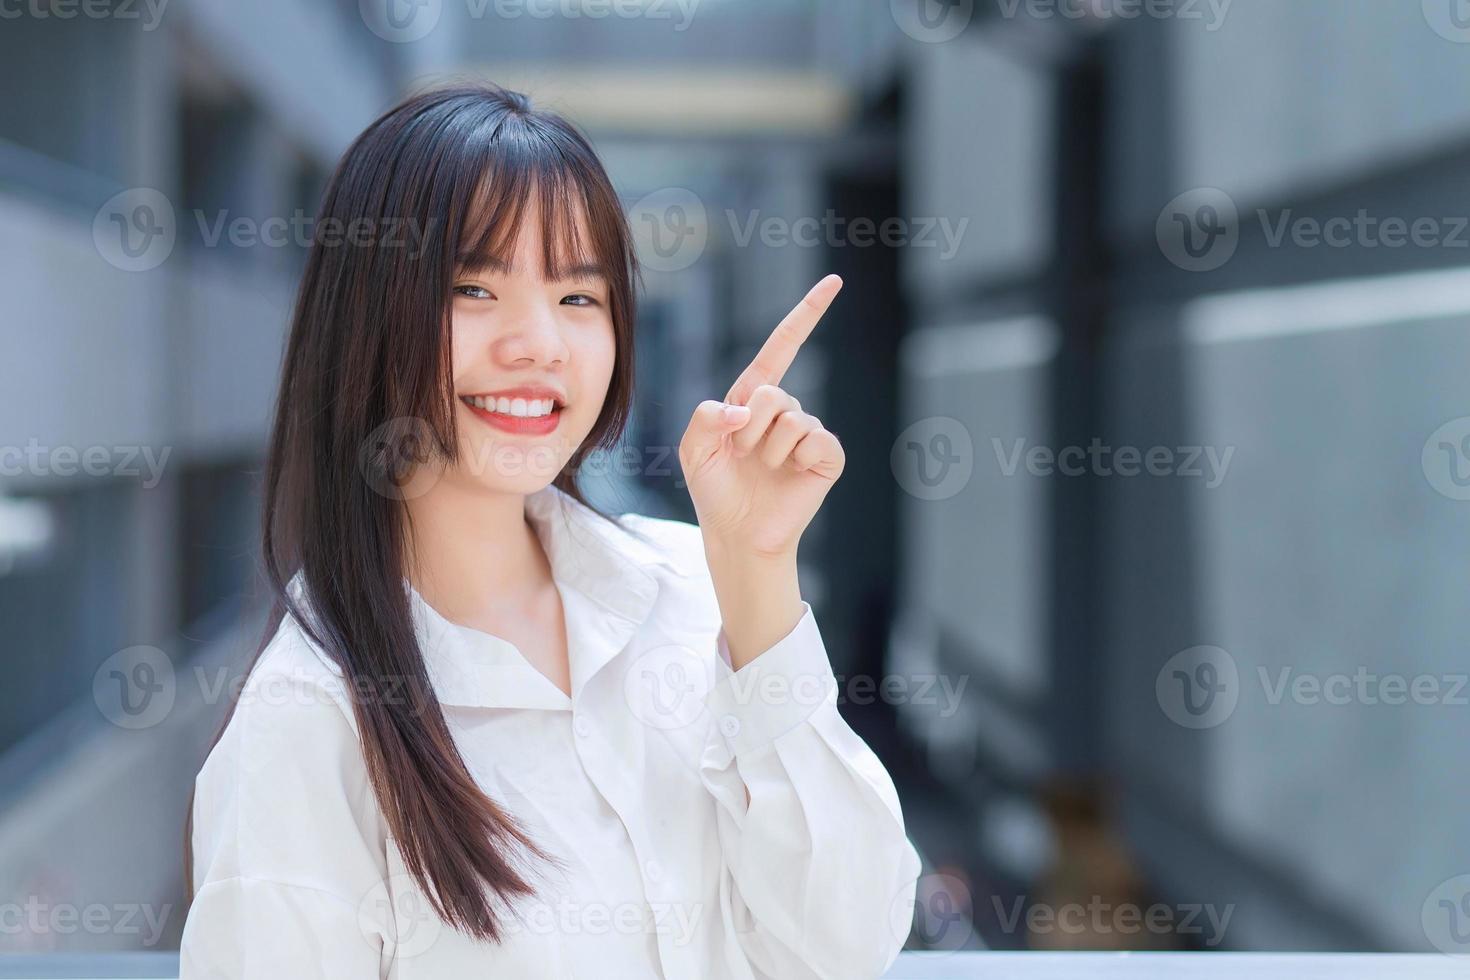 professionelle junge asiatische berufstätige frau, die weißes hemd trägt, zeigt mit der hand, um etwas zu präsentieren, während sie draußen in der stadt mit einem bürogebäude im hintergrund ist. foto